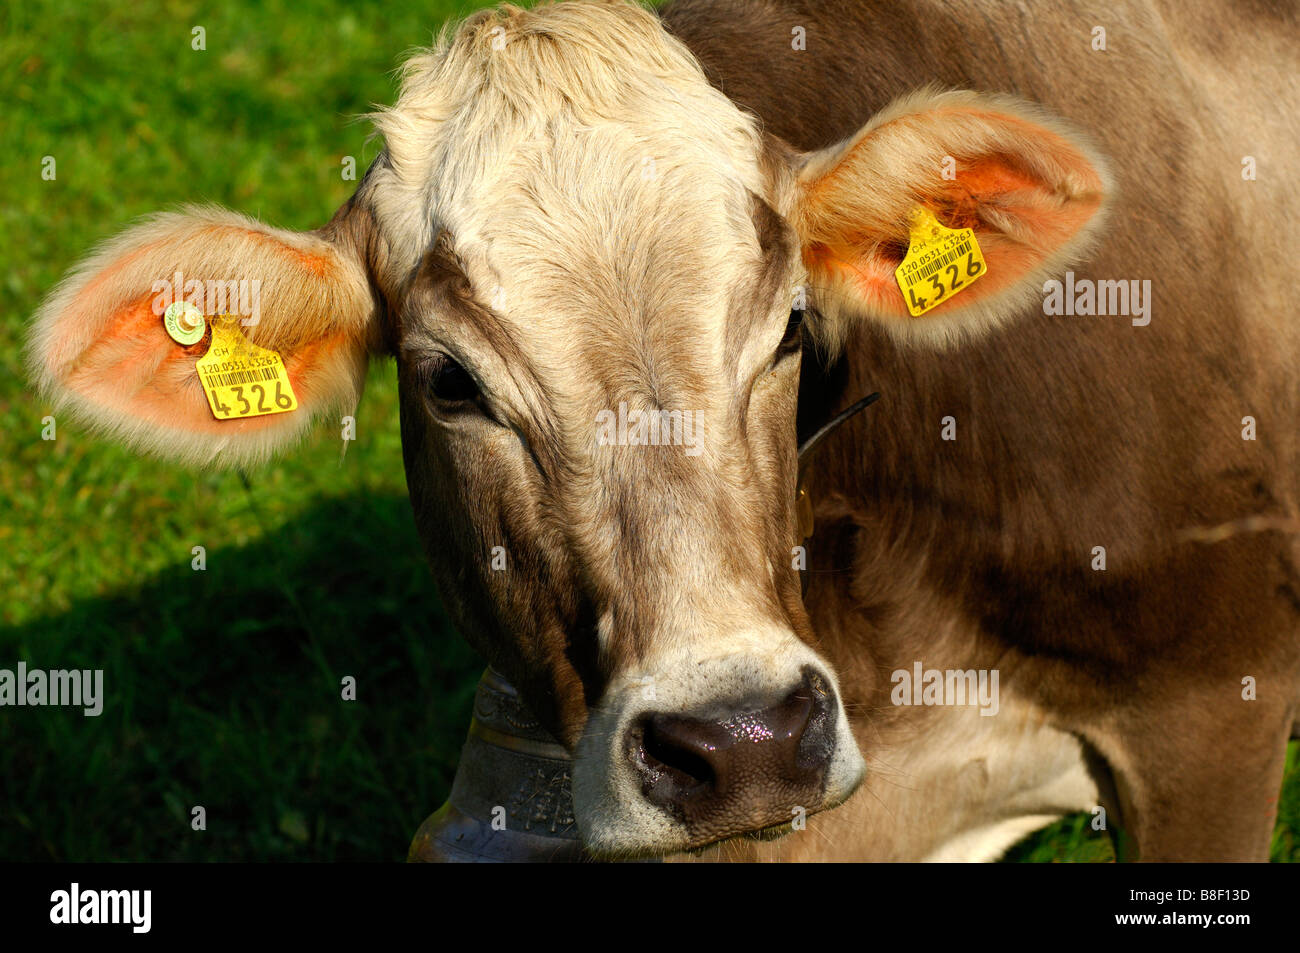 Hornlosen Brown Swiss Rinder mit einer Ohrmarke und eine Kuhglocke um den Hals, Blick in die Kamera Kanton Waadt Schweiz Stockfoto